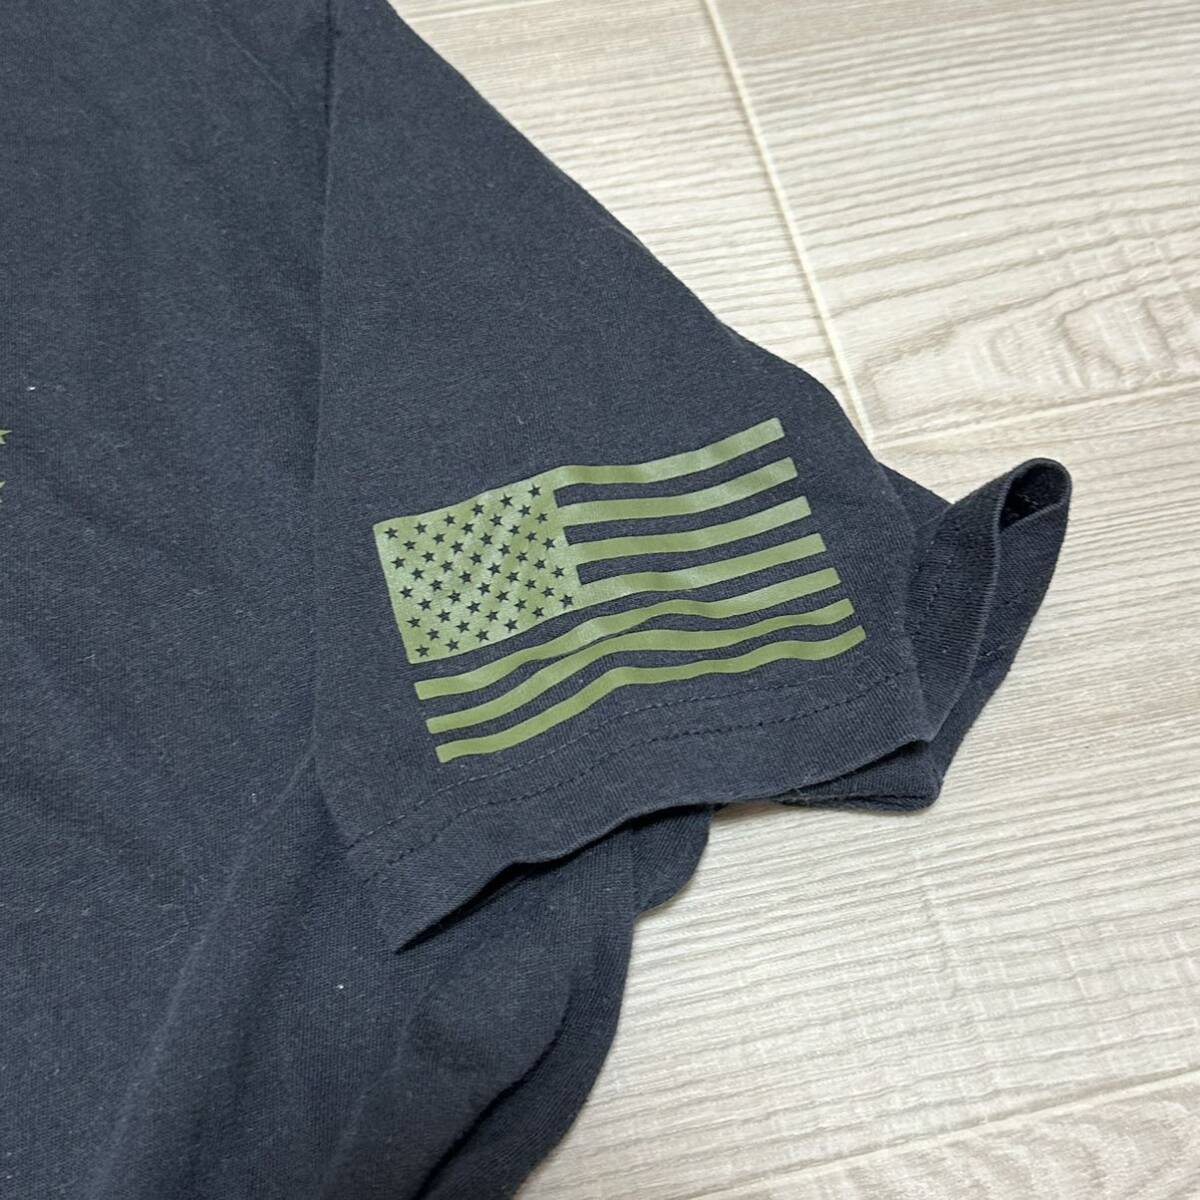  Okinawa вооруженные силы США сброшенный товар UNDER ARMOUR милитари короткий рукав футболка стиль мода б/у одежда Vintage MEDIUM ( контрольный номер TU106)